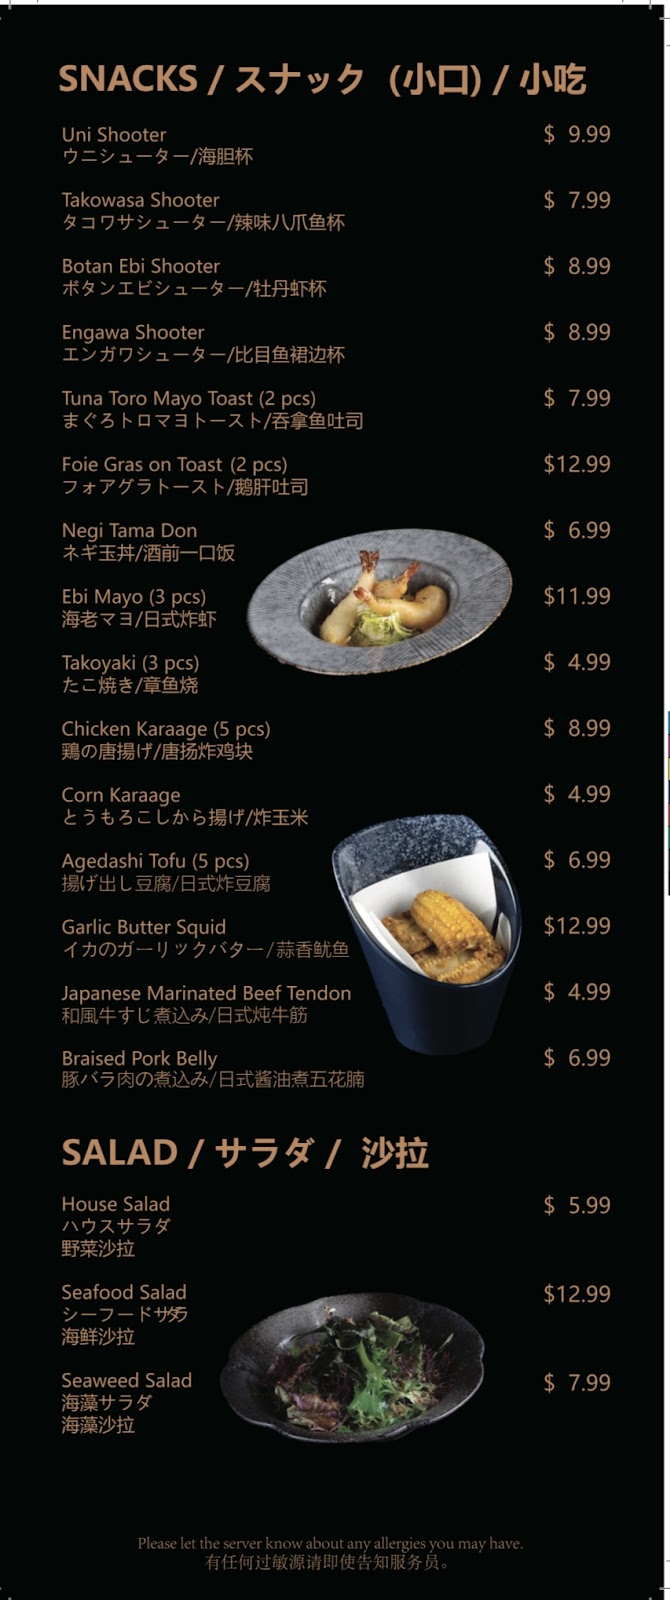 深夜食堂Meet Night Japanese Restaurant | restaurant | 2155 Allison Rd #222, Vancouver, BC V6T 1T5, Canada | 2364763370 OR +1 236-476-3370